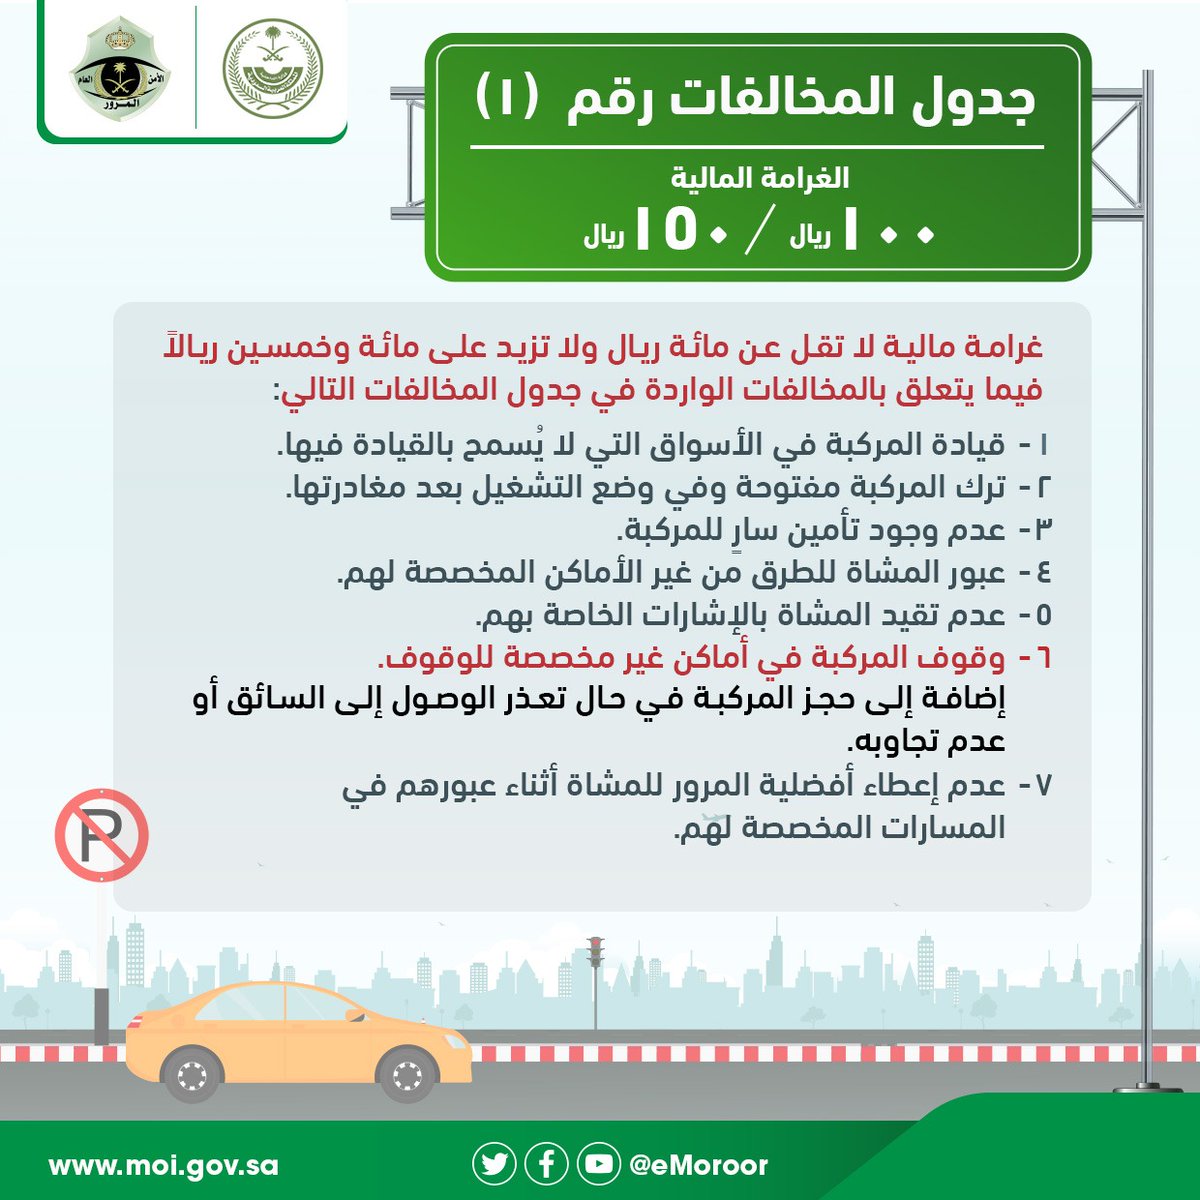 قائمة المخالفات لعام 2020 في السعودية سيارات سيدتي